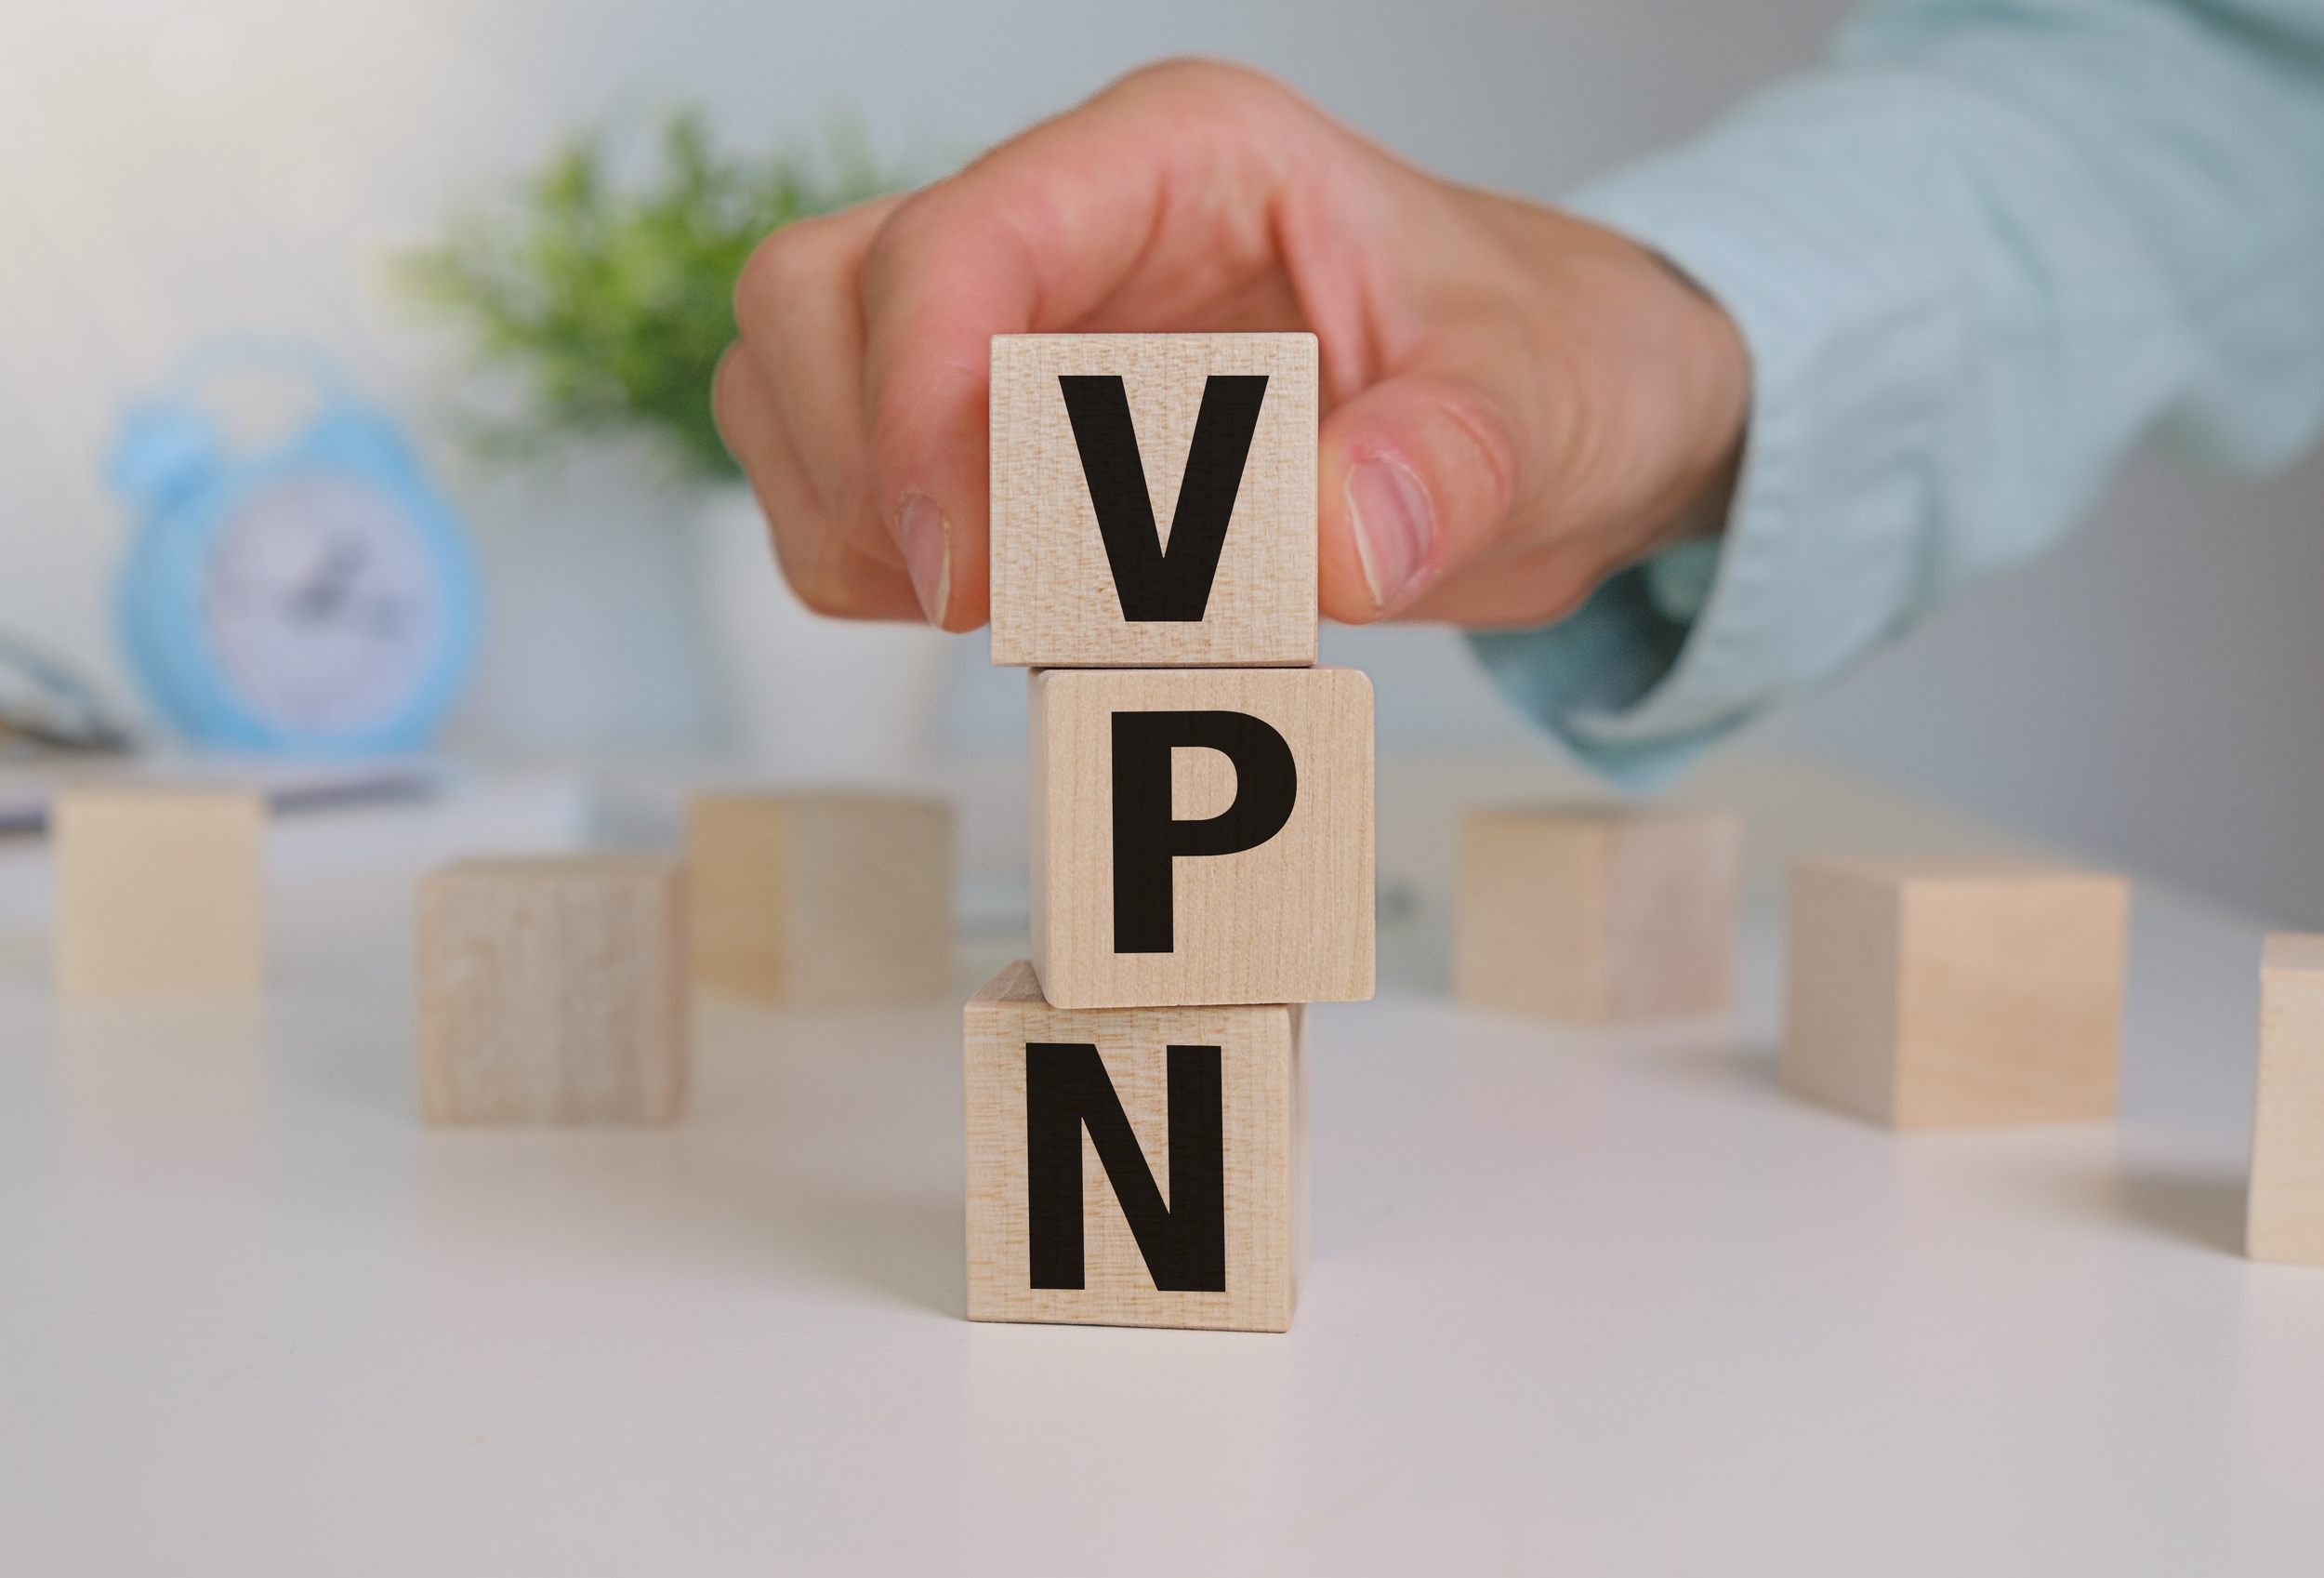 Ces 17 applications VPN gratuites peuvent contenir un malware qui transforme vos téléphones en proxys à votre insu